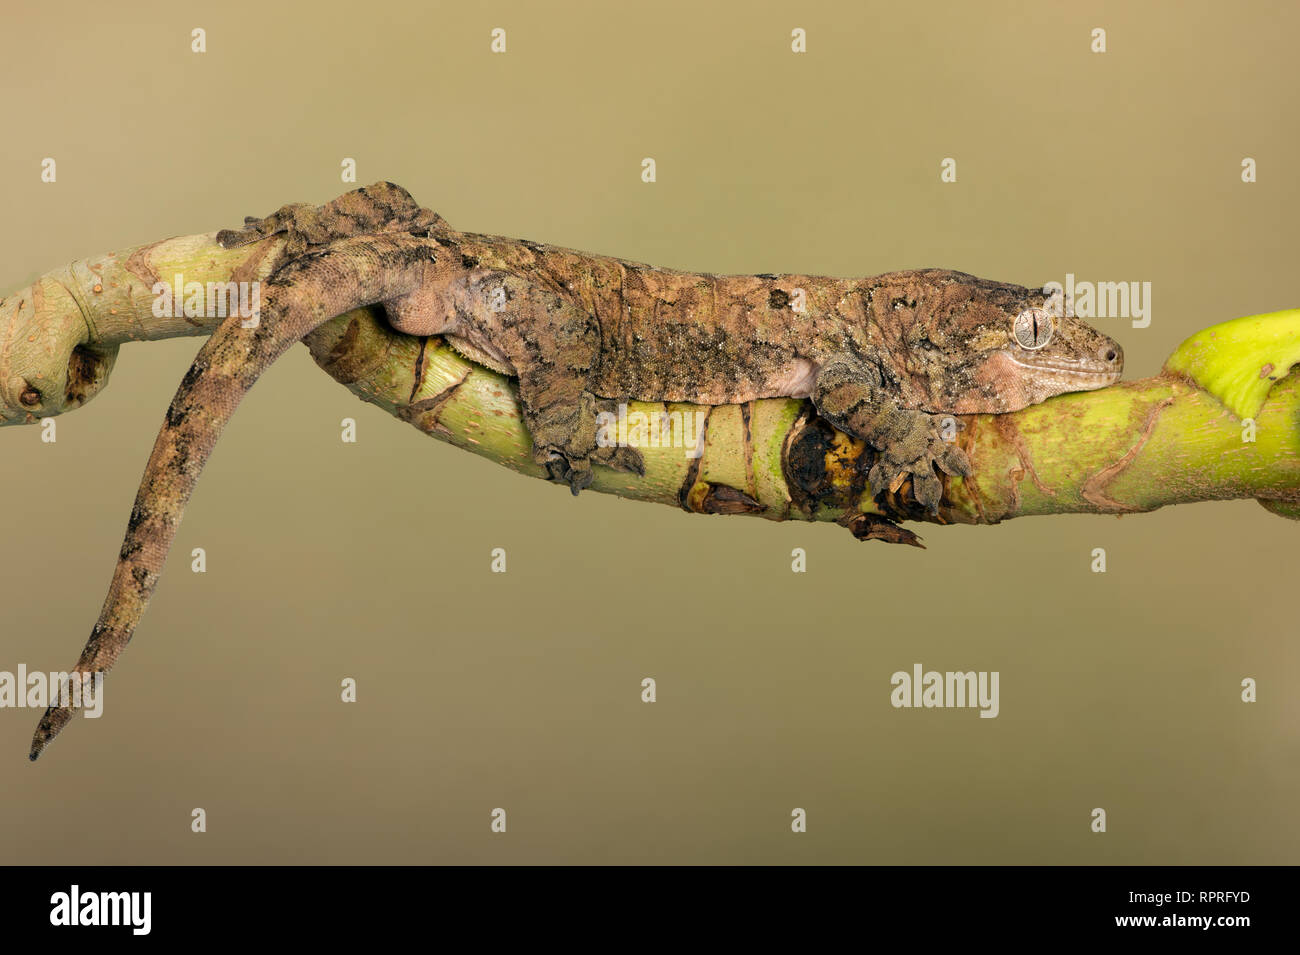 Mossy Prehensile Tail Gecko (Mniarogekko chahoua) Stock Photo